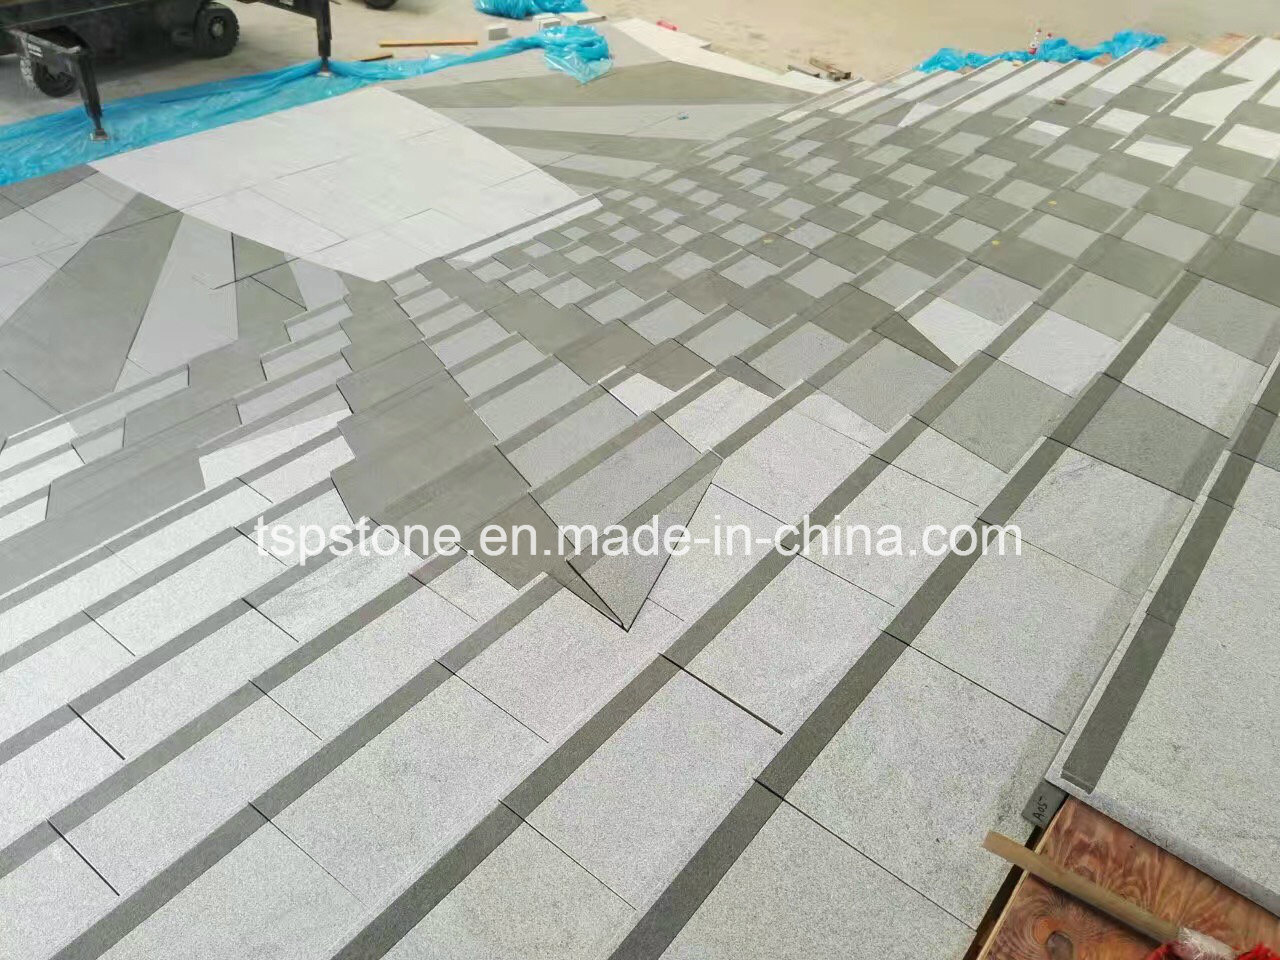 Quartz/Marble/Granite for Floor Tile/Flooring Tile/Paving Stone